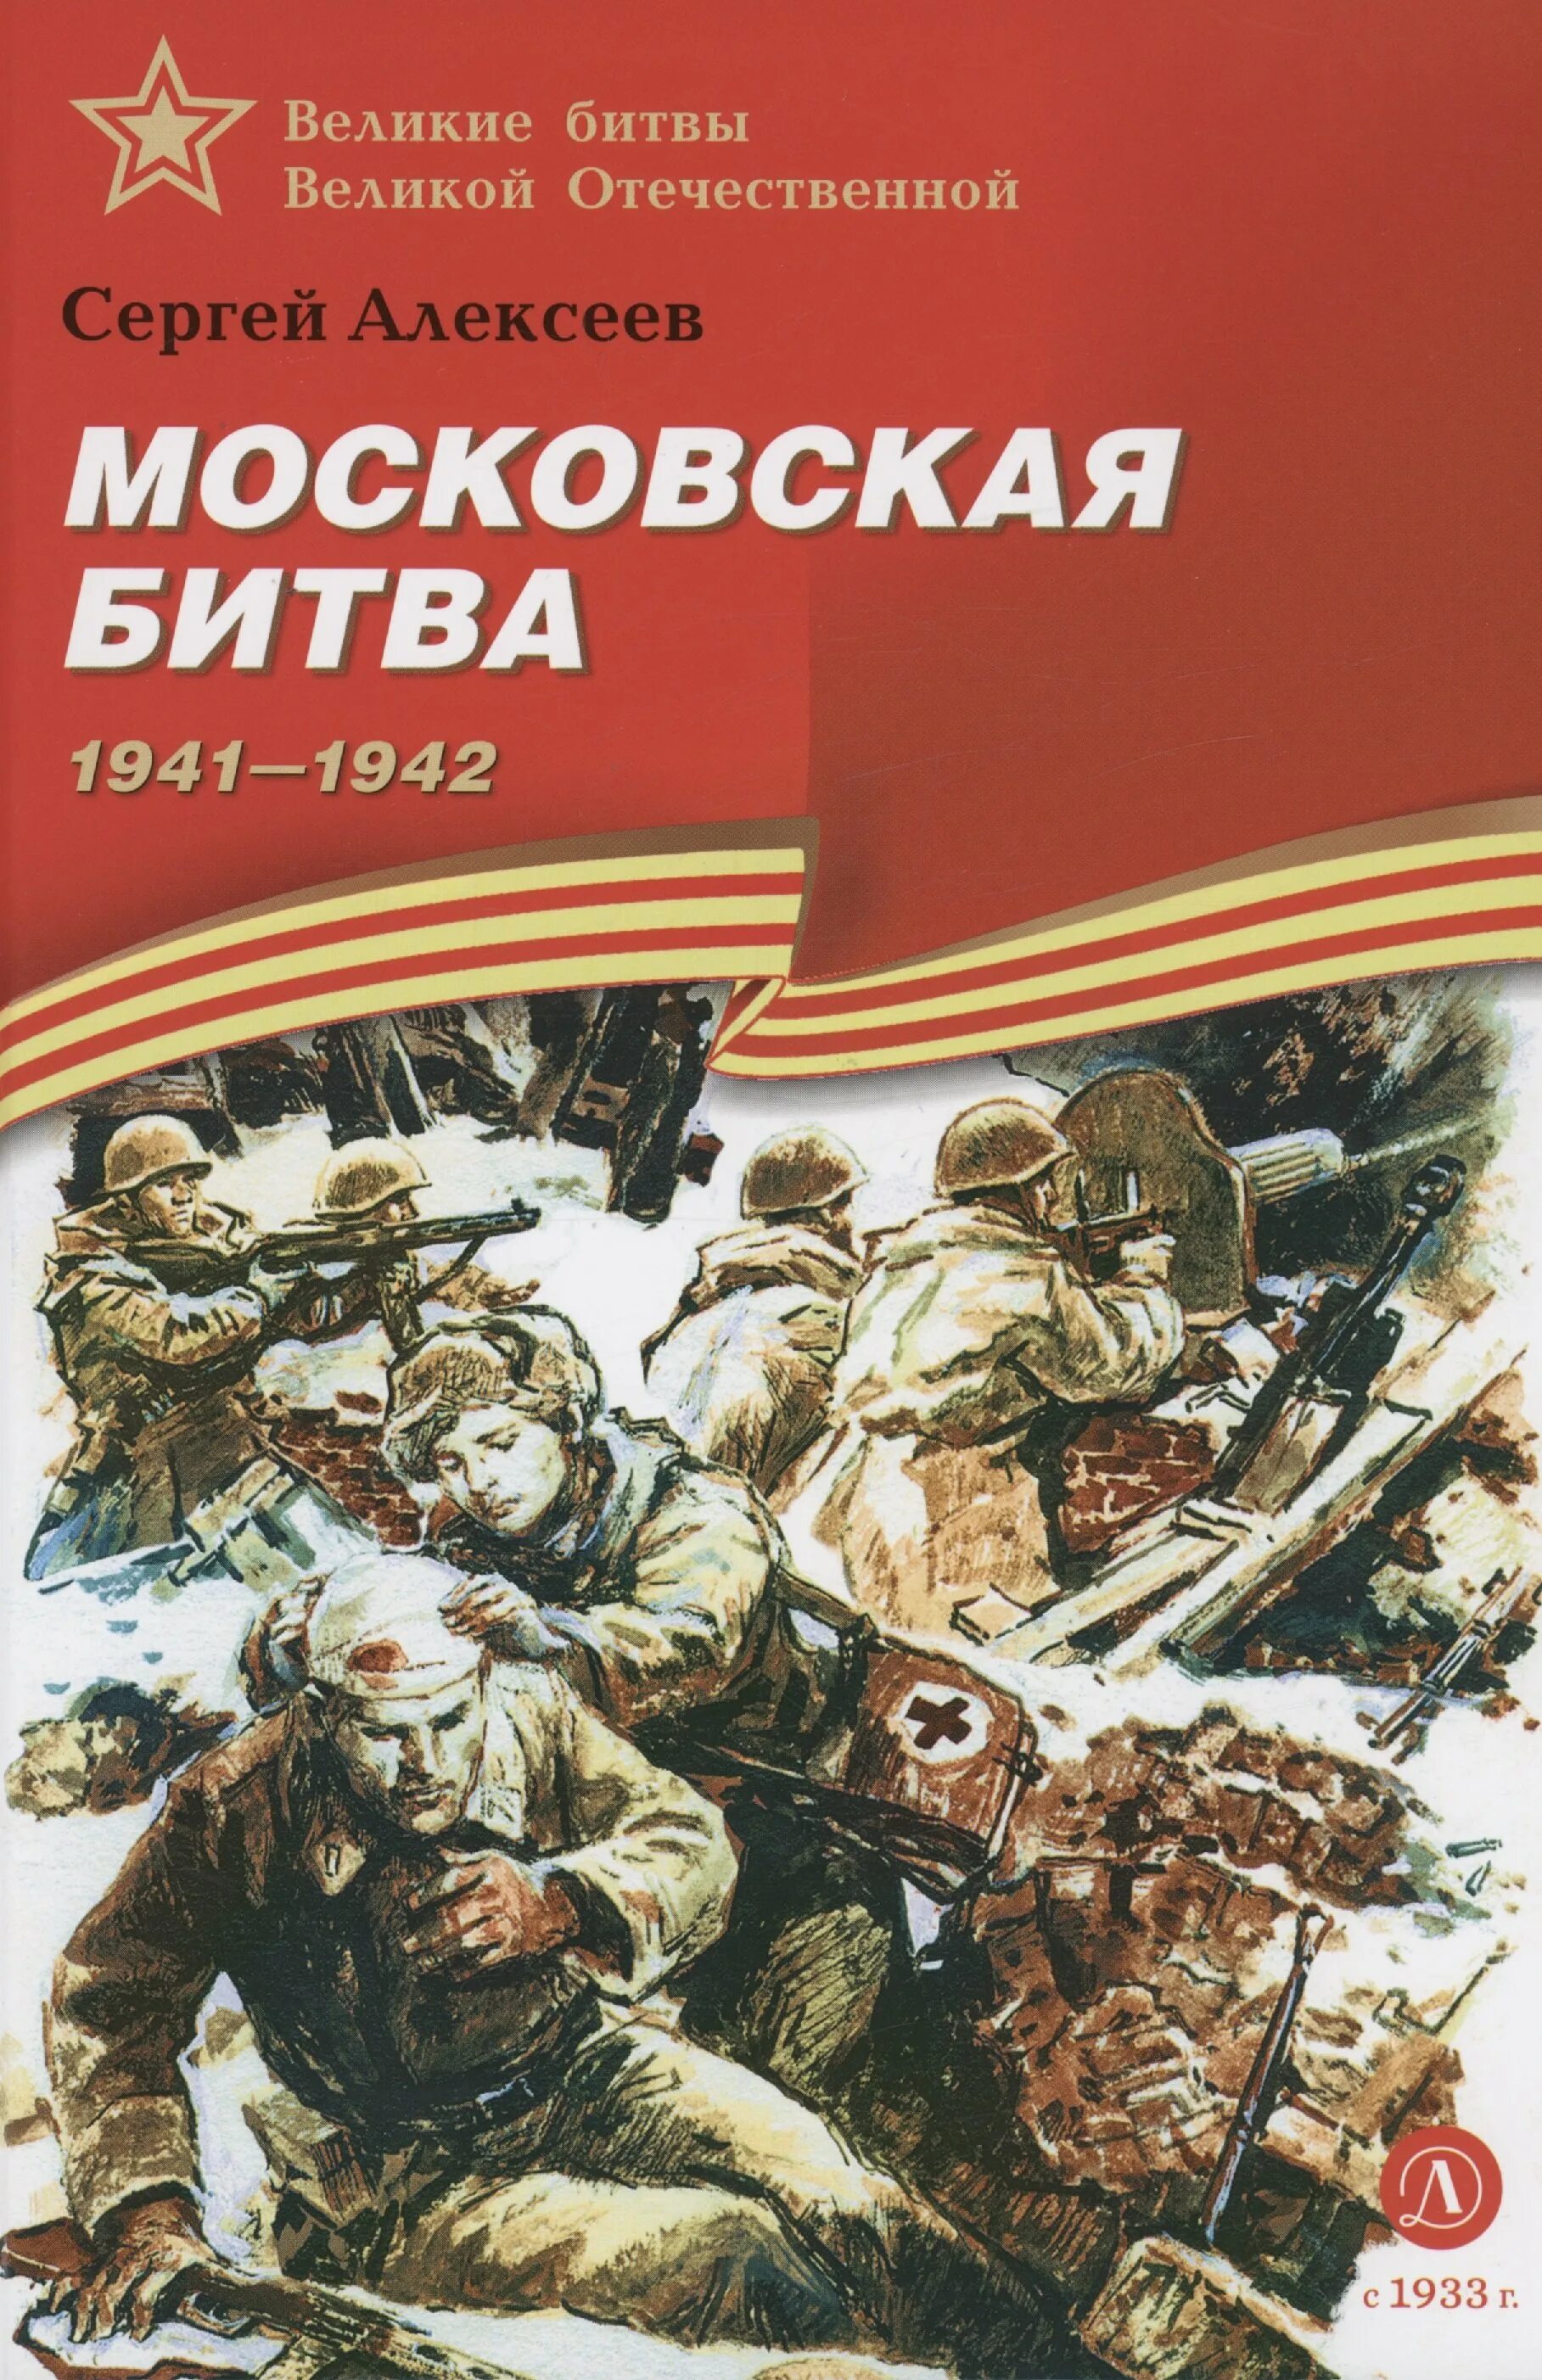 Книга с.Алексеева Московская битва.